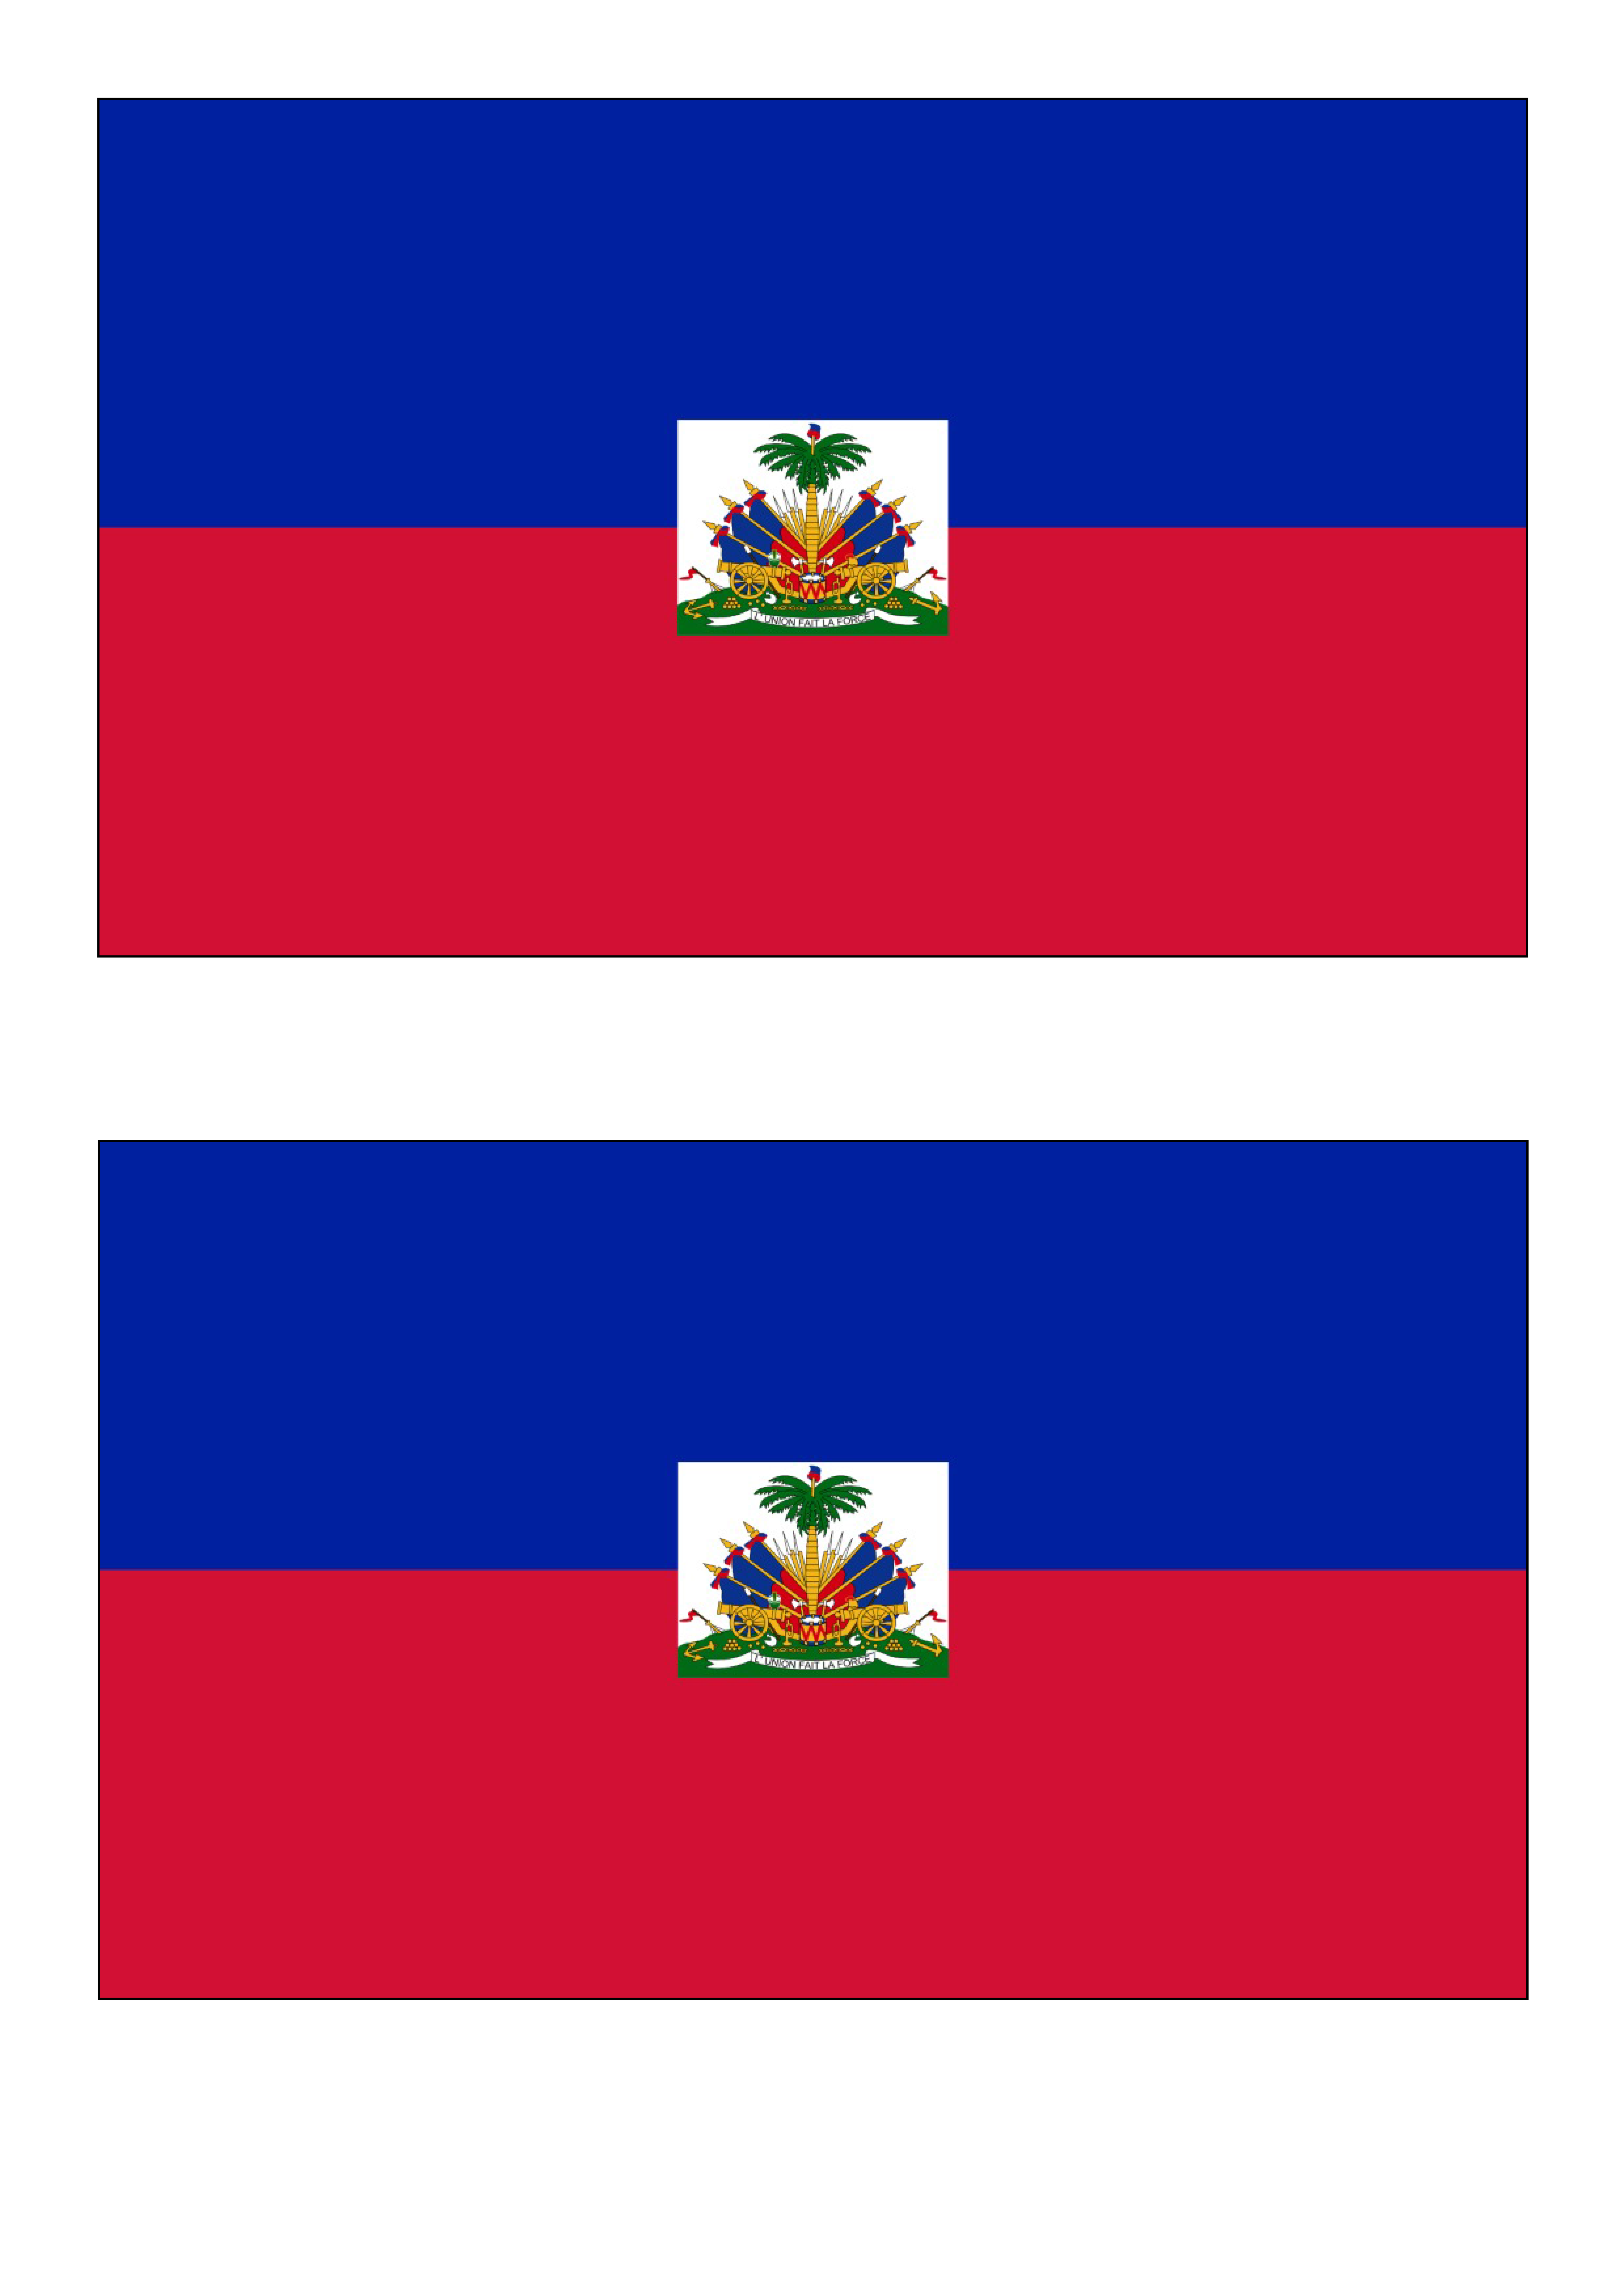 Haiti Flag main image